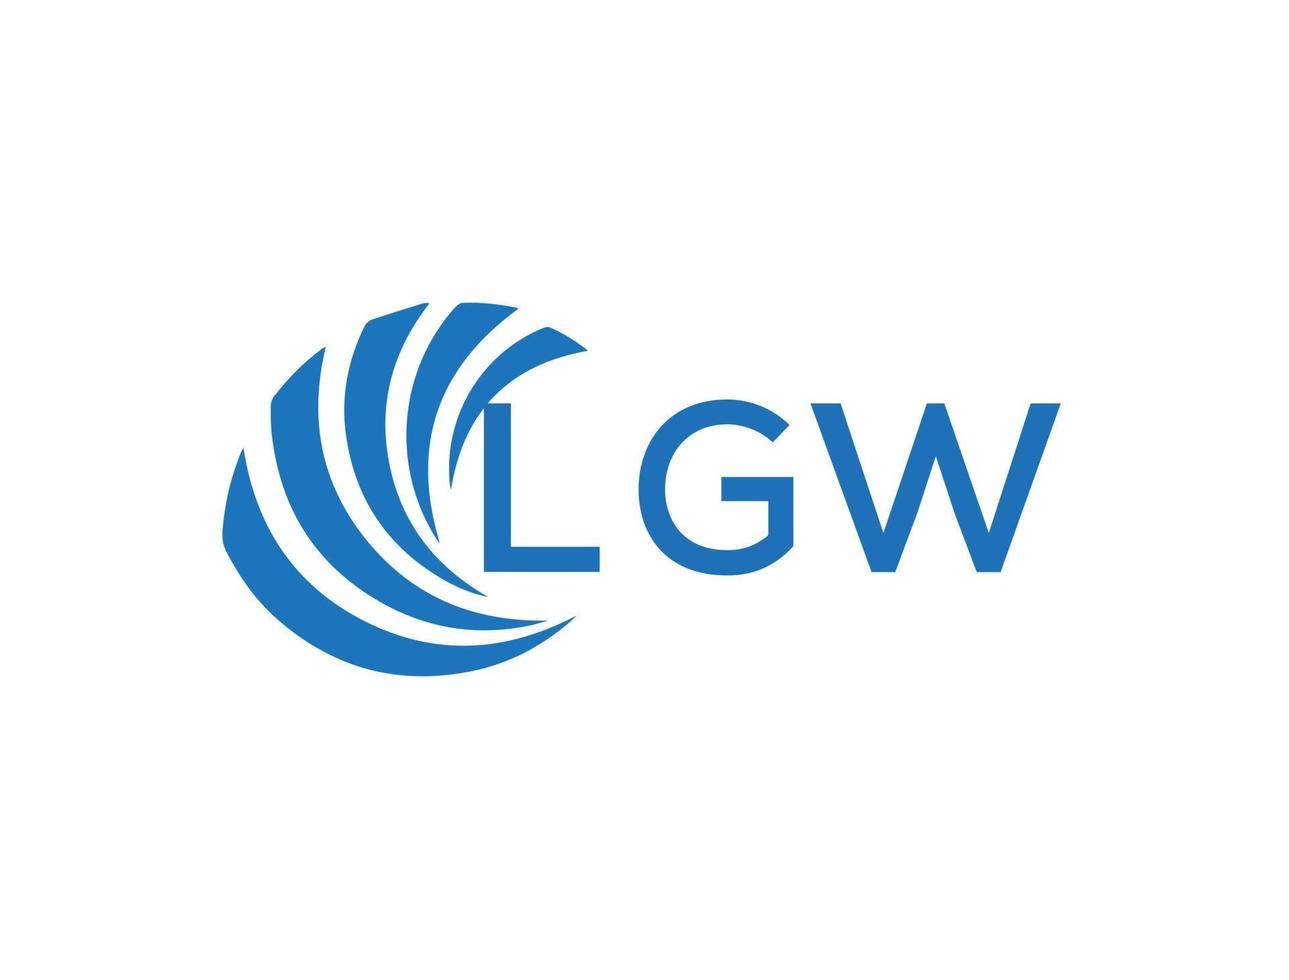 lgw resumen negocio crecimiento logo diseño en blanco antecedentes. lgw creativo iniciales letra logo concepto. vector